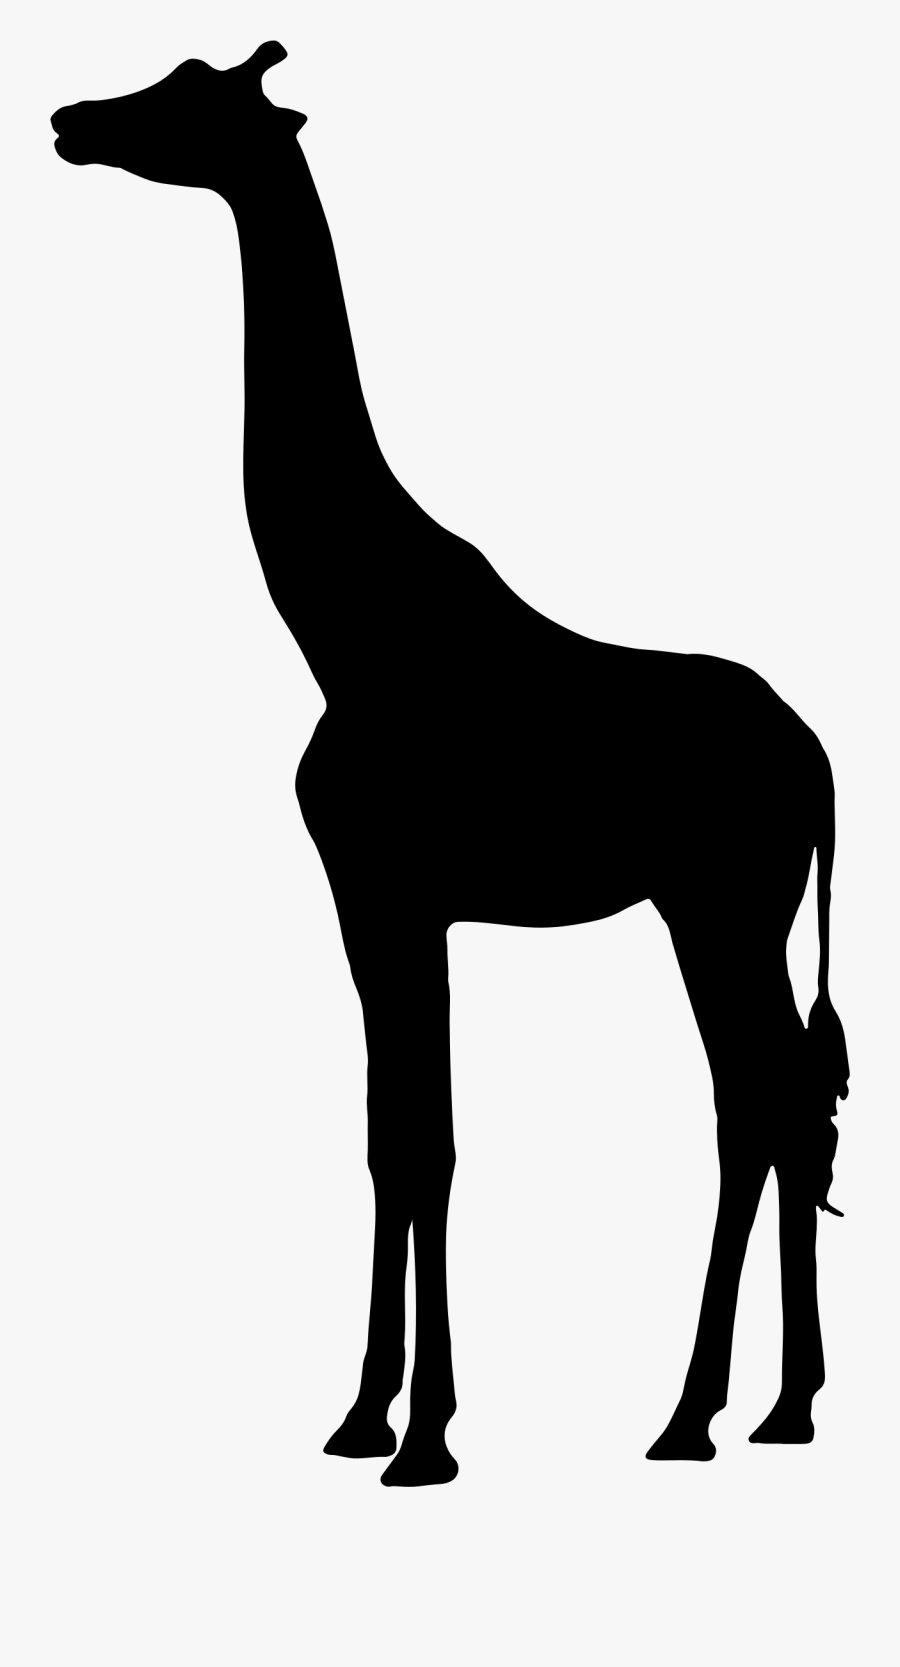 deer-head-silhouette-png